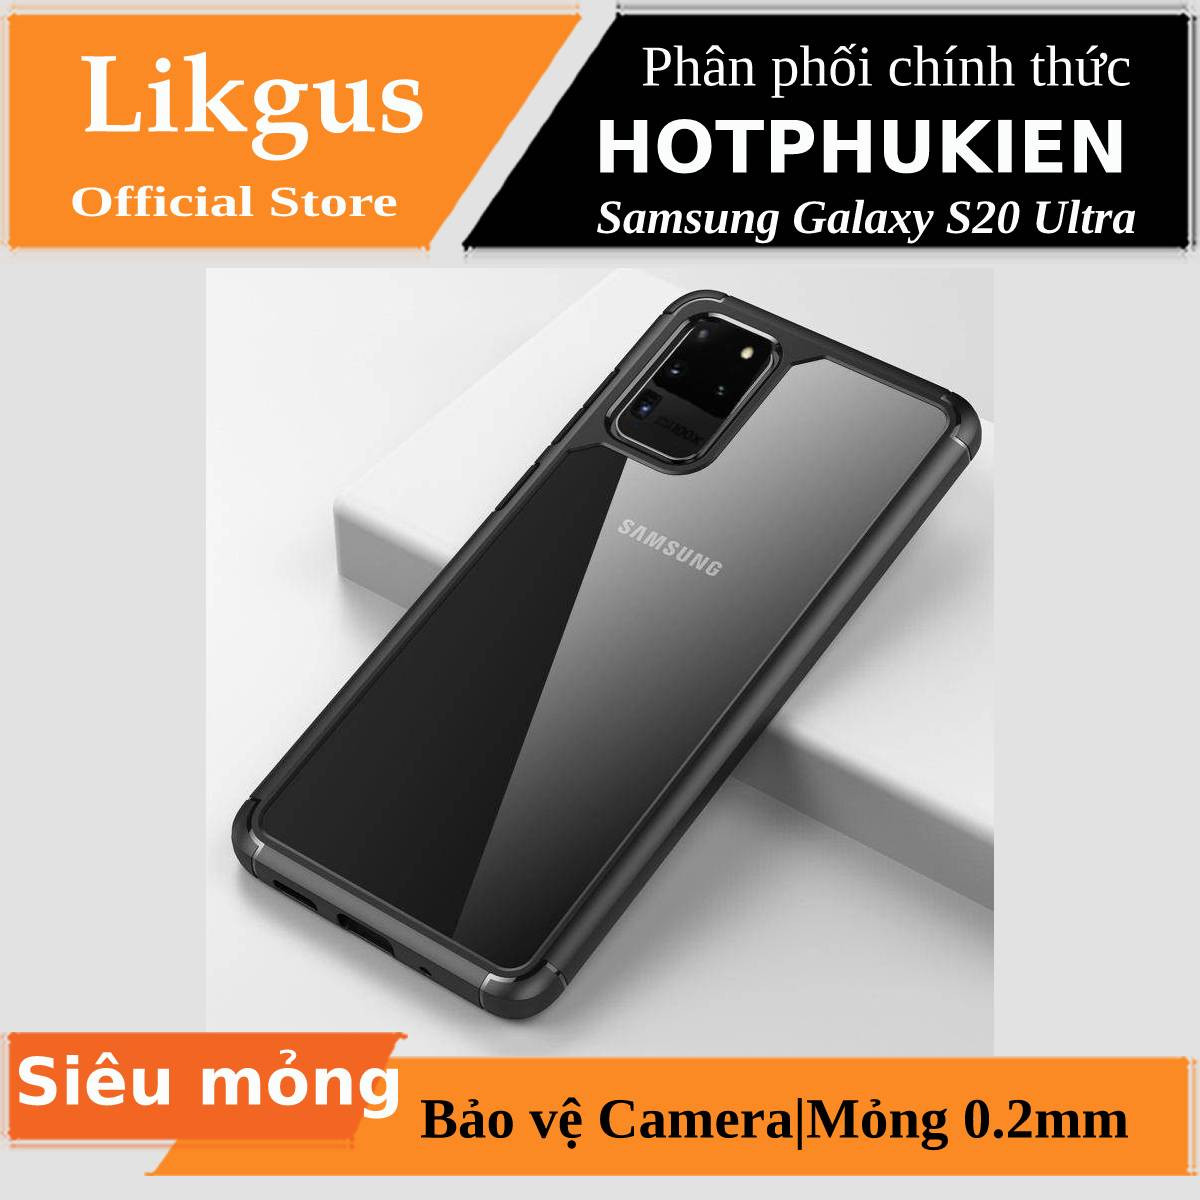 Ốp Lưng Chống Sốc viền màu siêu mỏng Cho Samsung Galaxy S20 Ultra hiệu Likgus